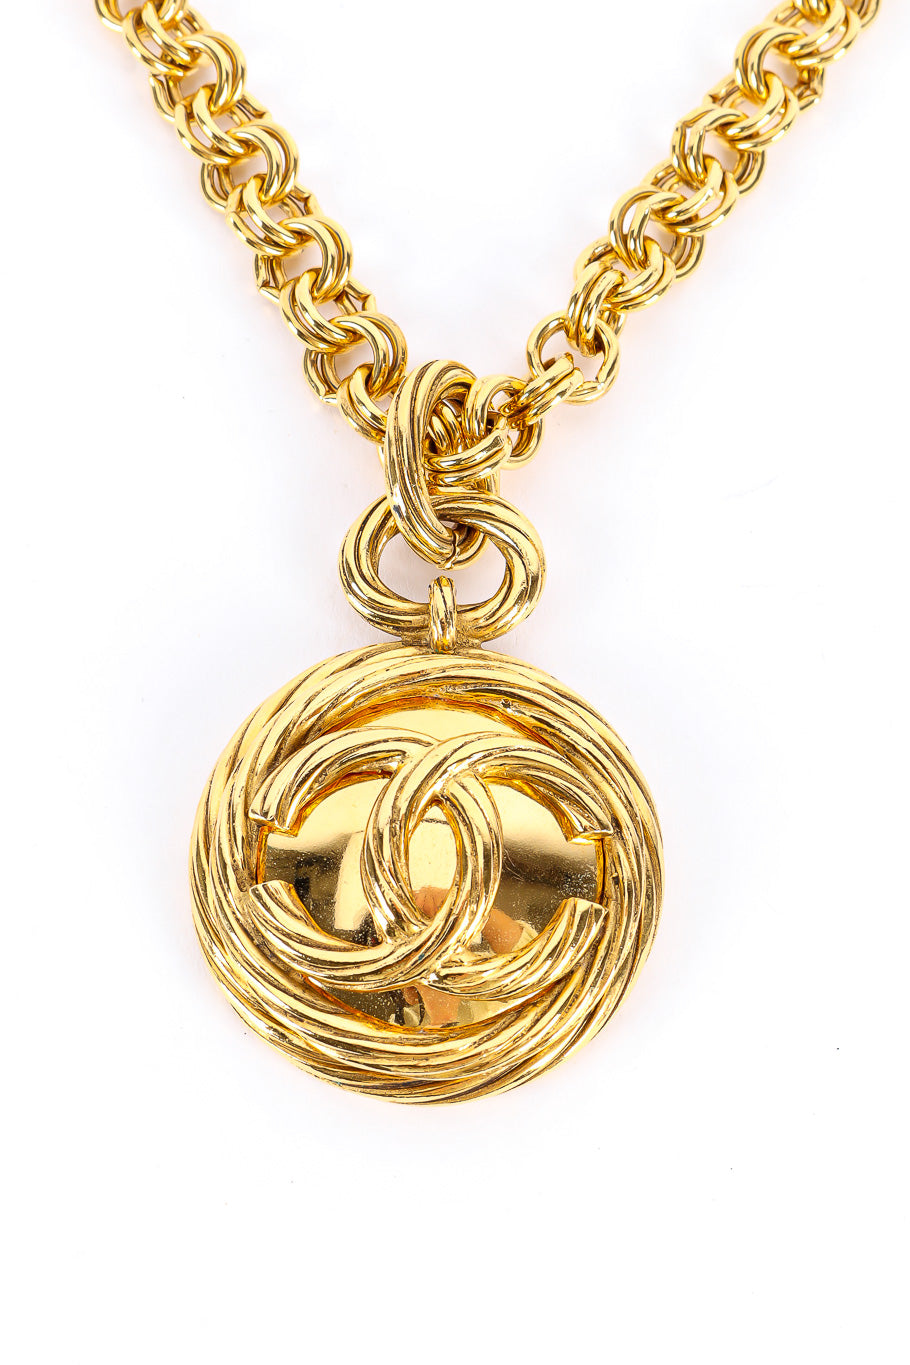 Vintage Chanel Mirror CC Pendant Chain Necklace pendant closeup @recessla